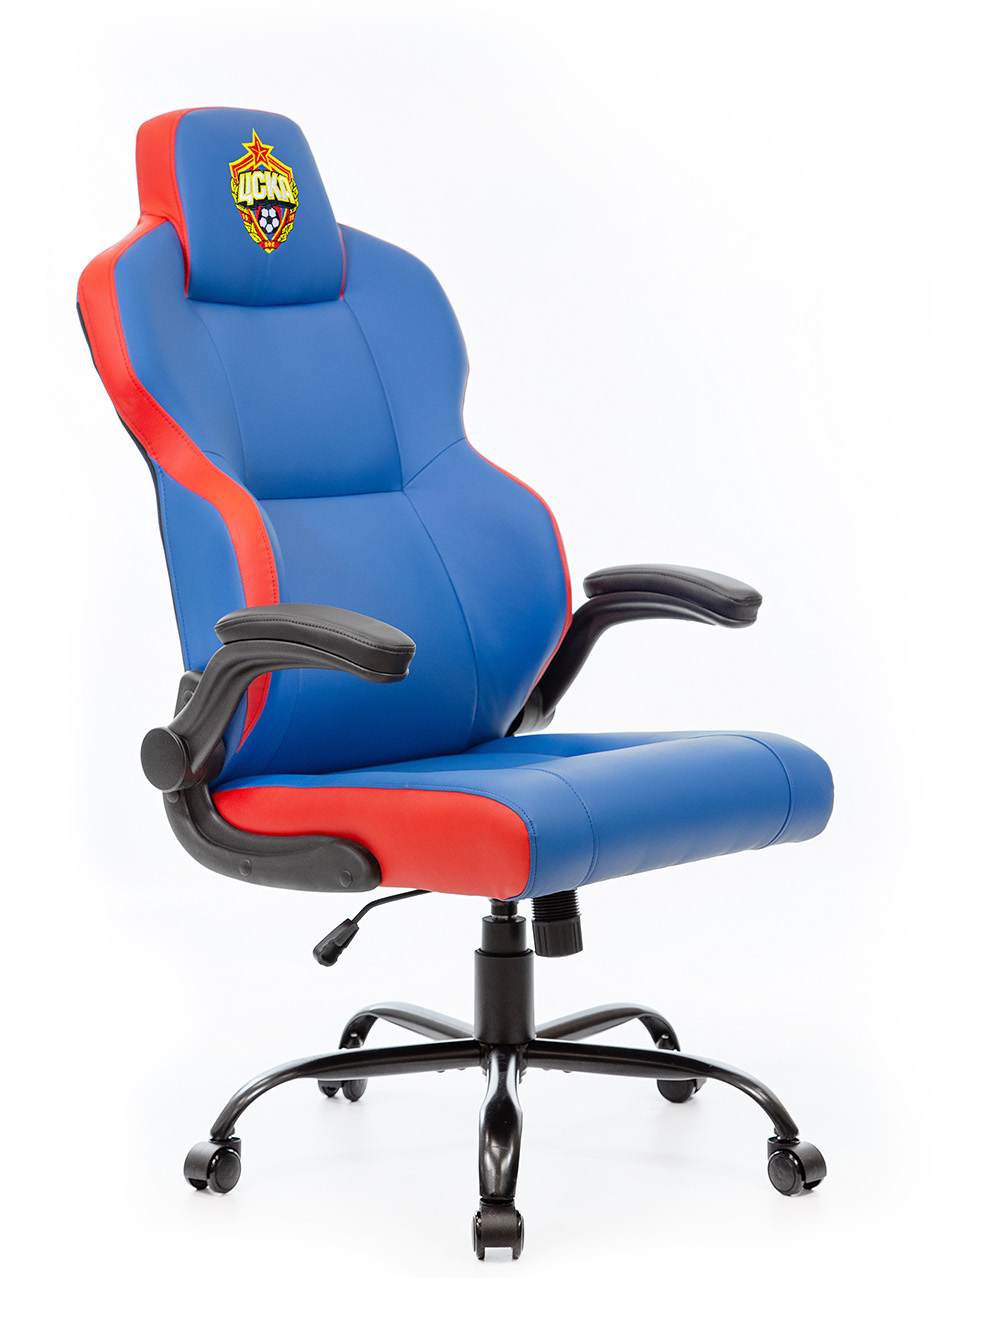 Кресло игровое компьютерное красно-синее с эмблемой ПФК ЦСКА